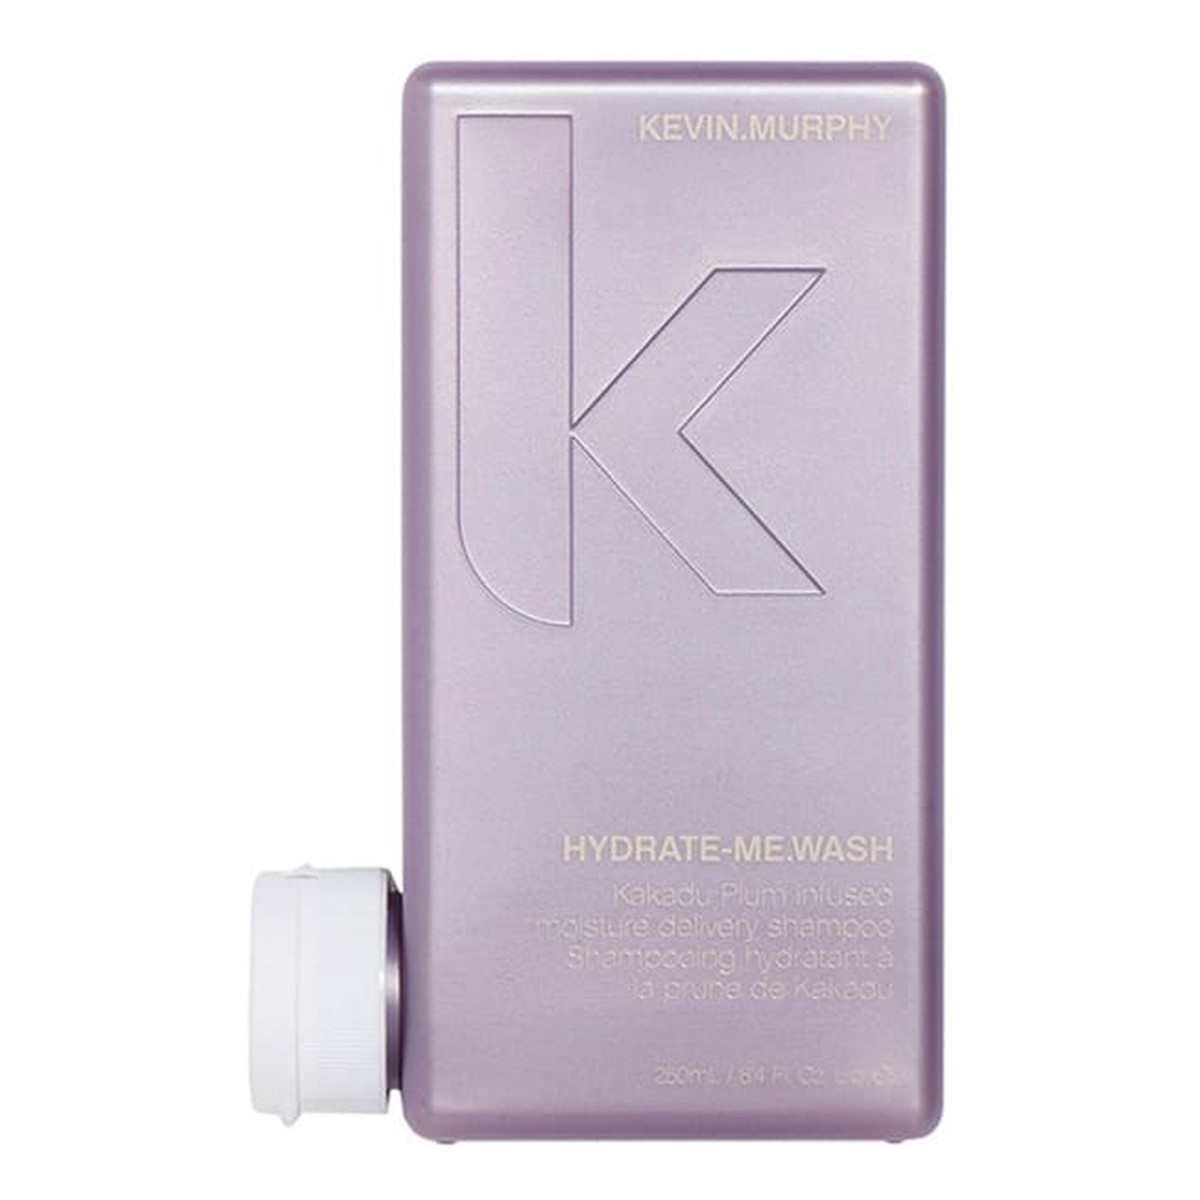 Kevin Murphy Hydrate me wash infused moisture delivery shampoo nawilżający szampon do włosów 250ml